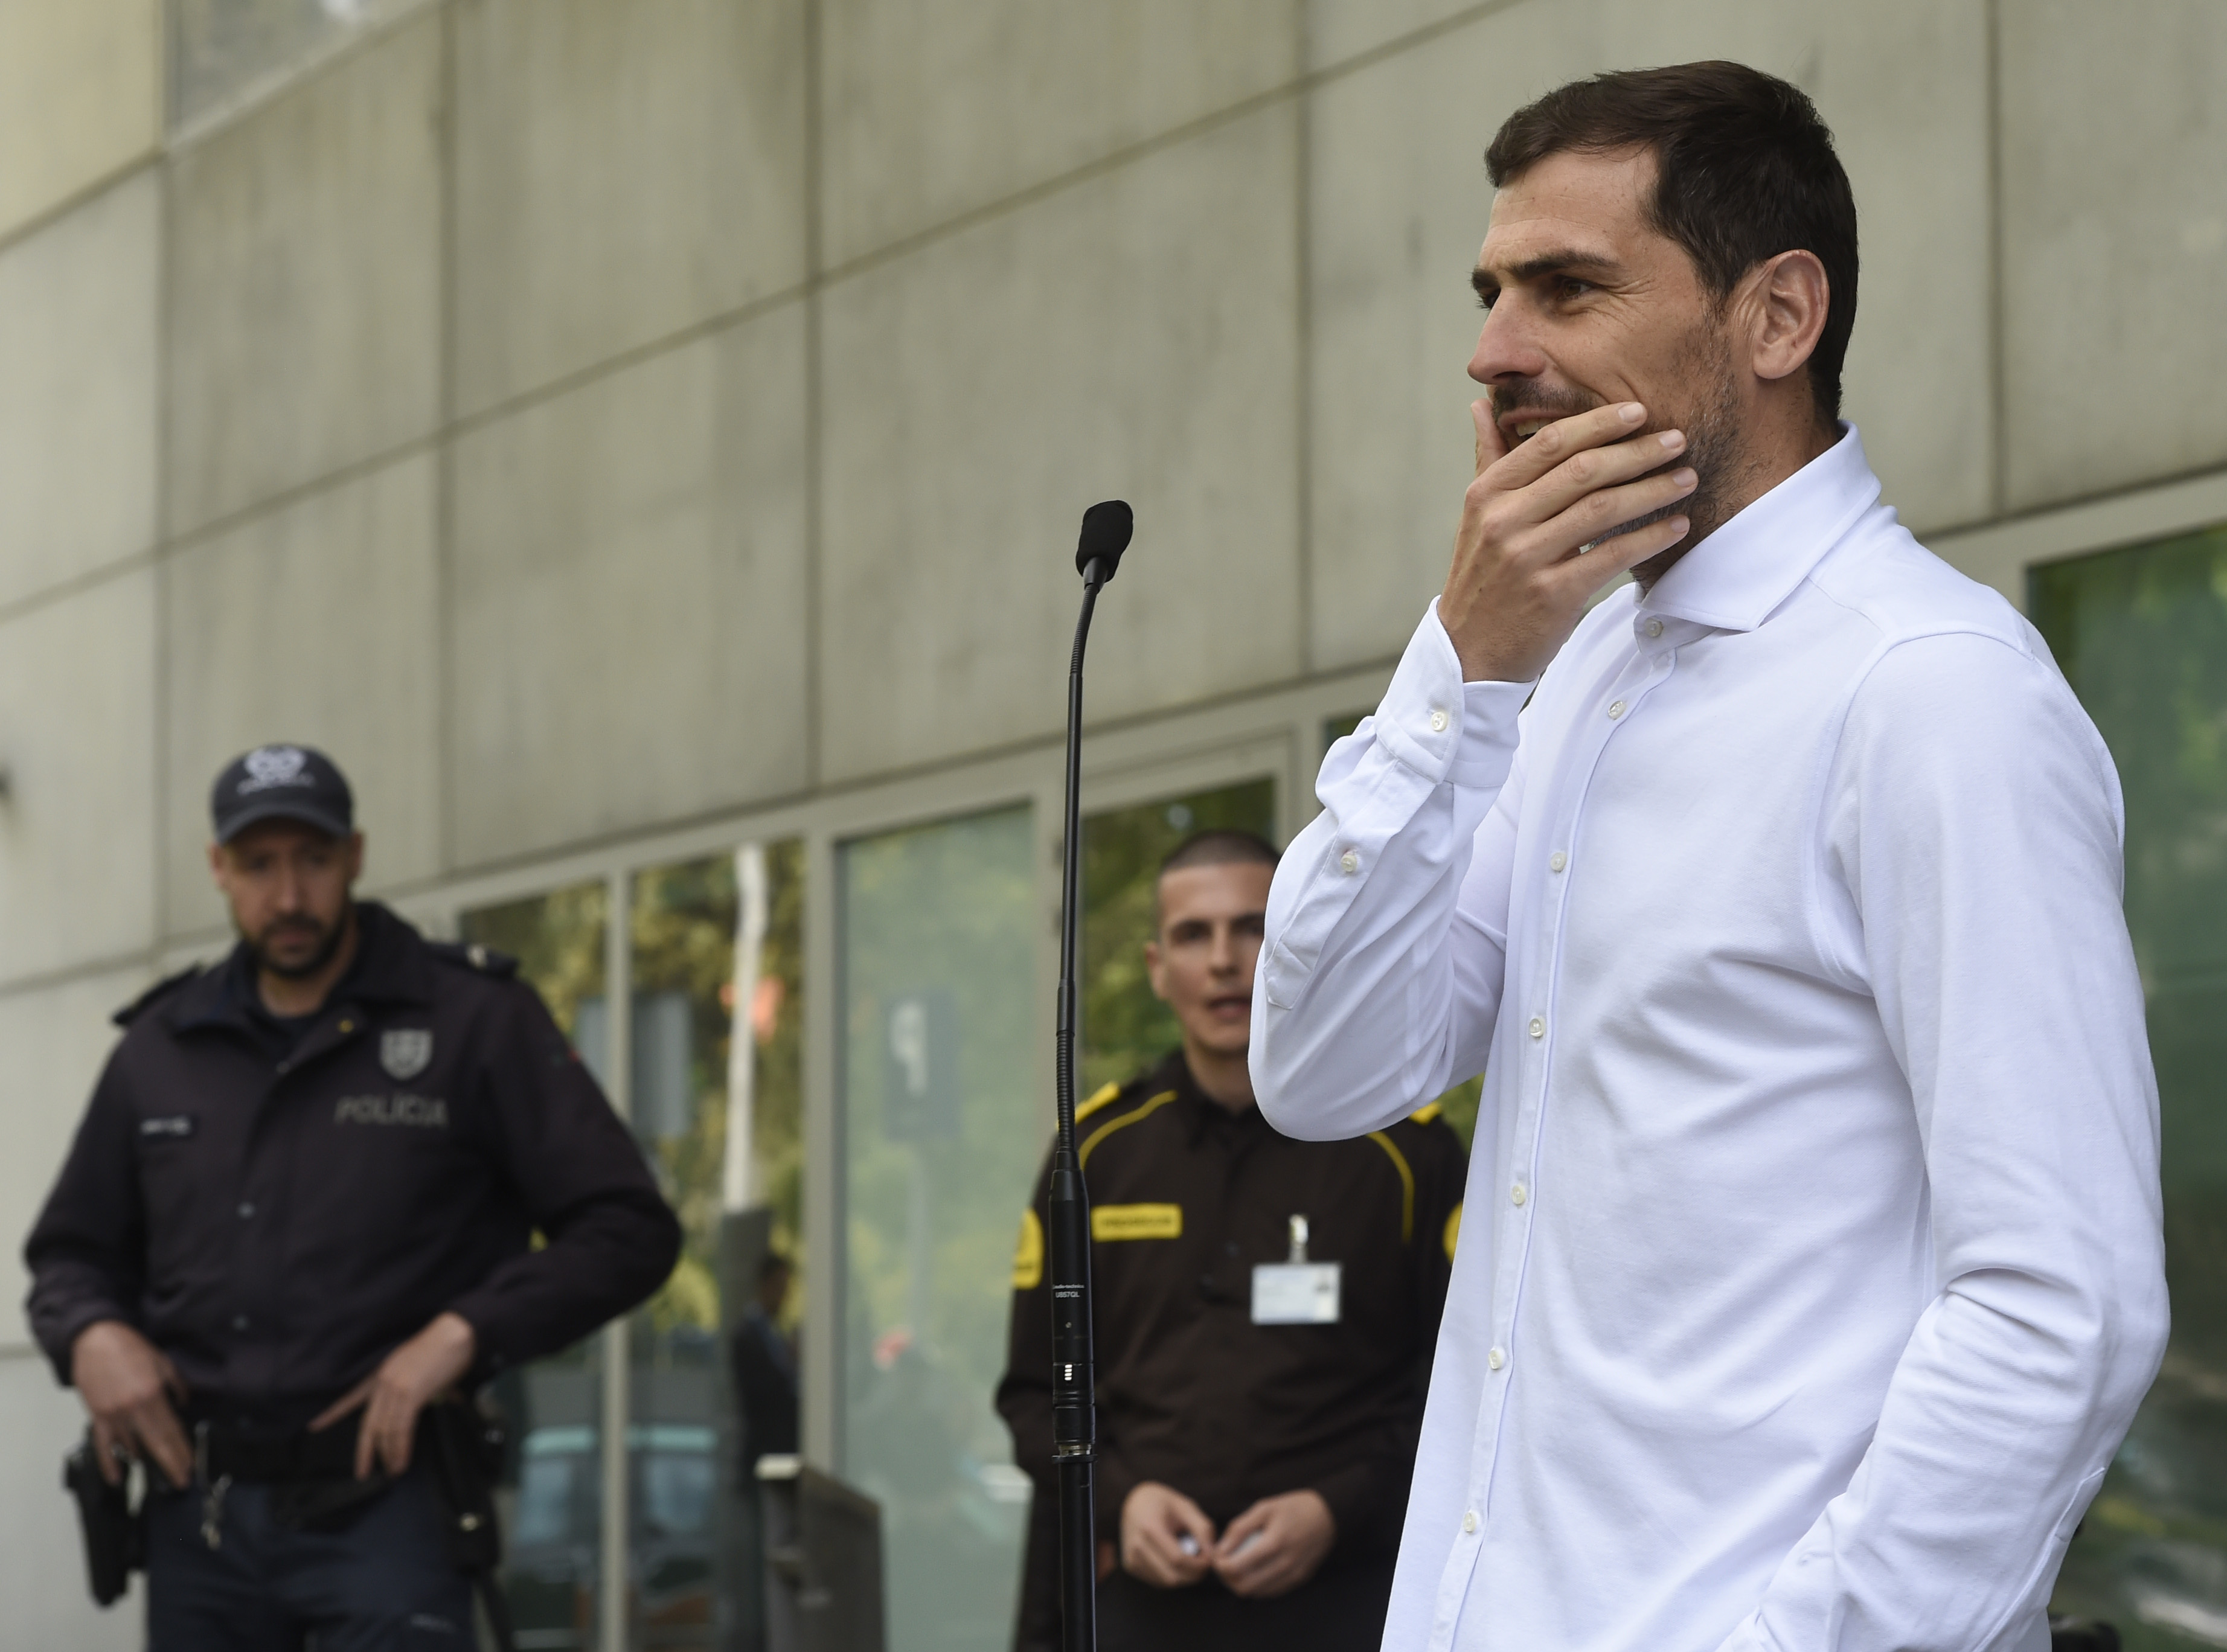 Iker Casillas: “No sé qué será del futuro, lo más importante era estar aquí”